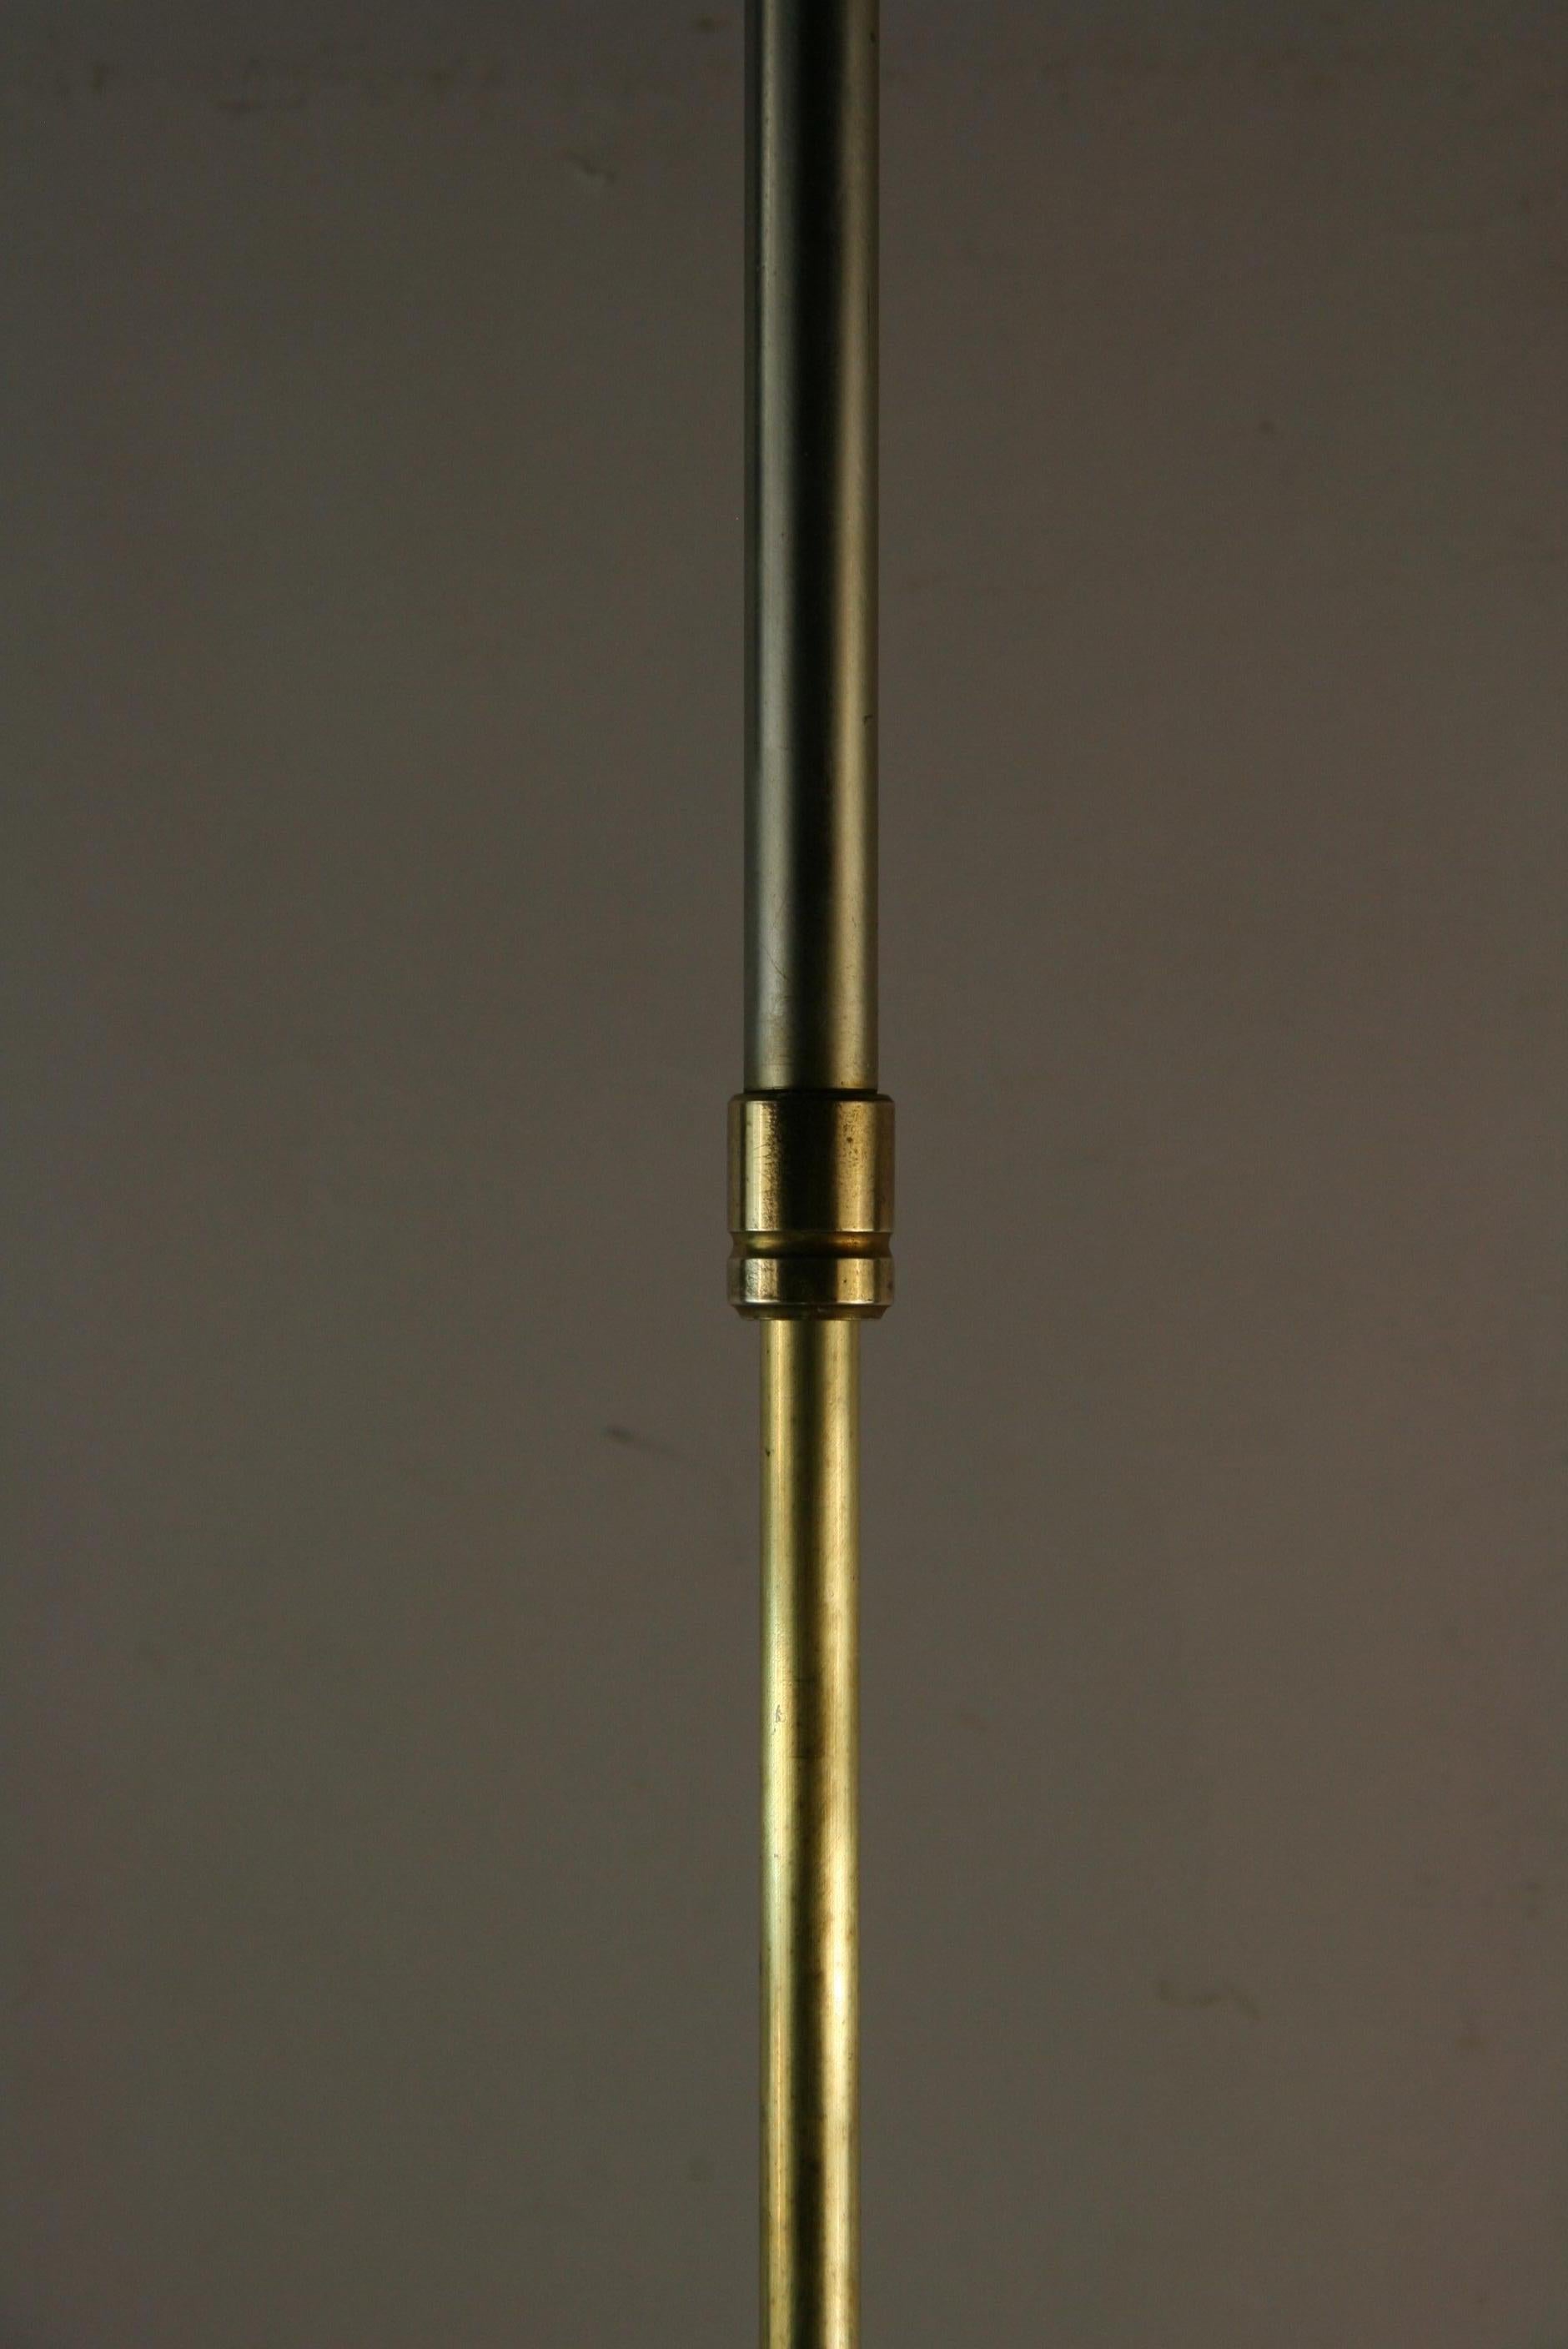 8-149a Französische Stehleuchte mit verstellbarem Stativfuß aus Nickel und Messing
Muss neu verkabelt werden
Nehmen Sie 2 60-Watt-Glühbirnen
Schirm nicht enthalten.